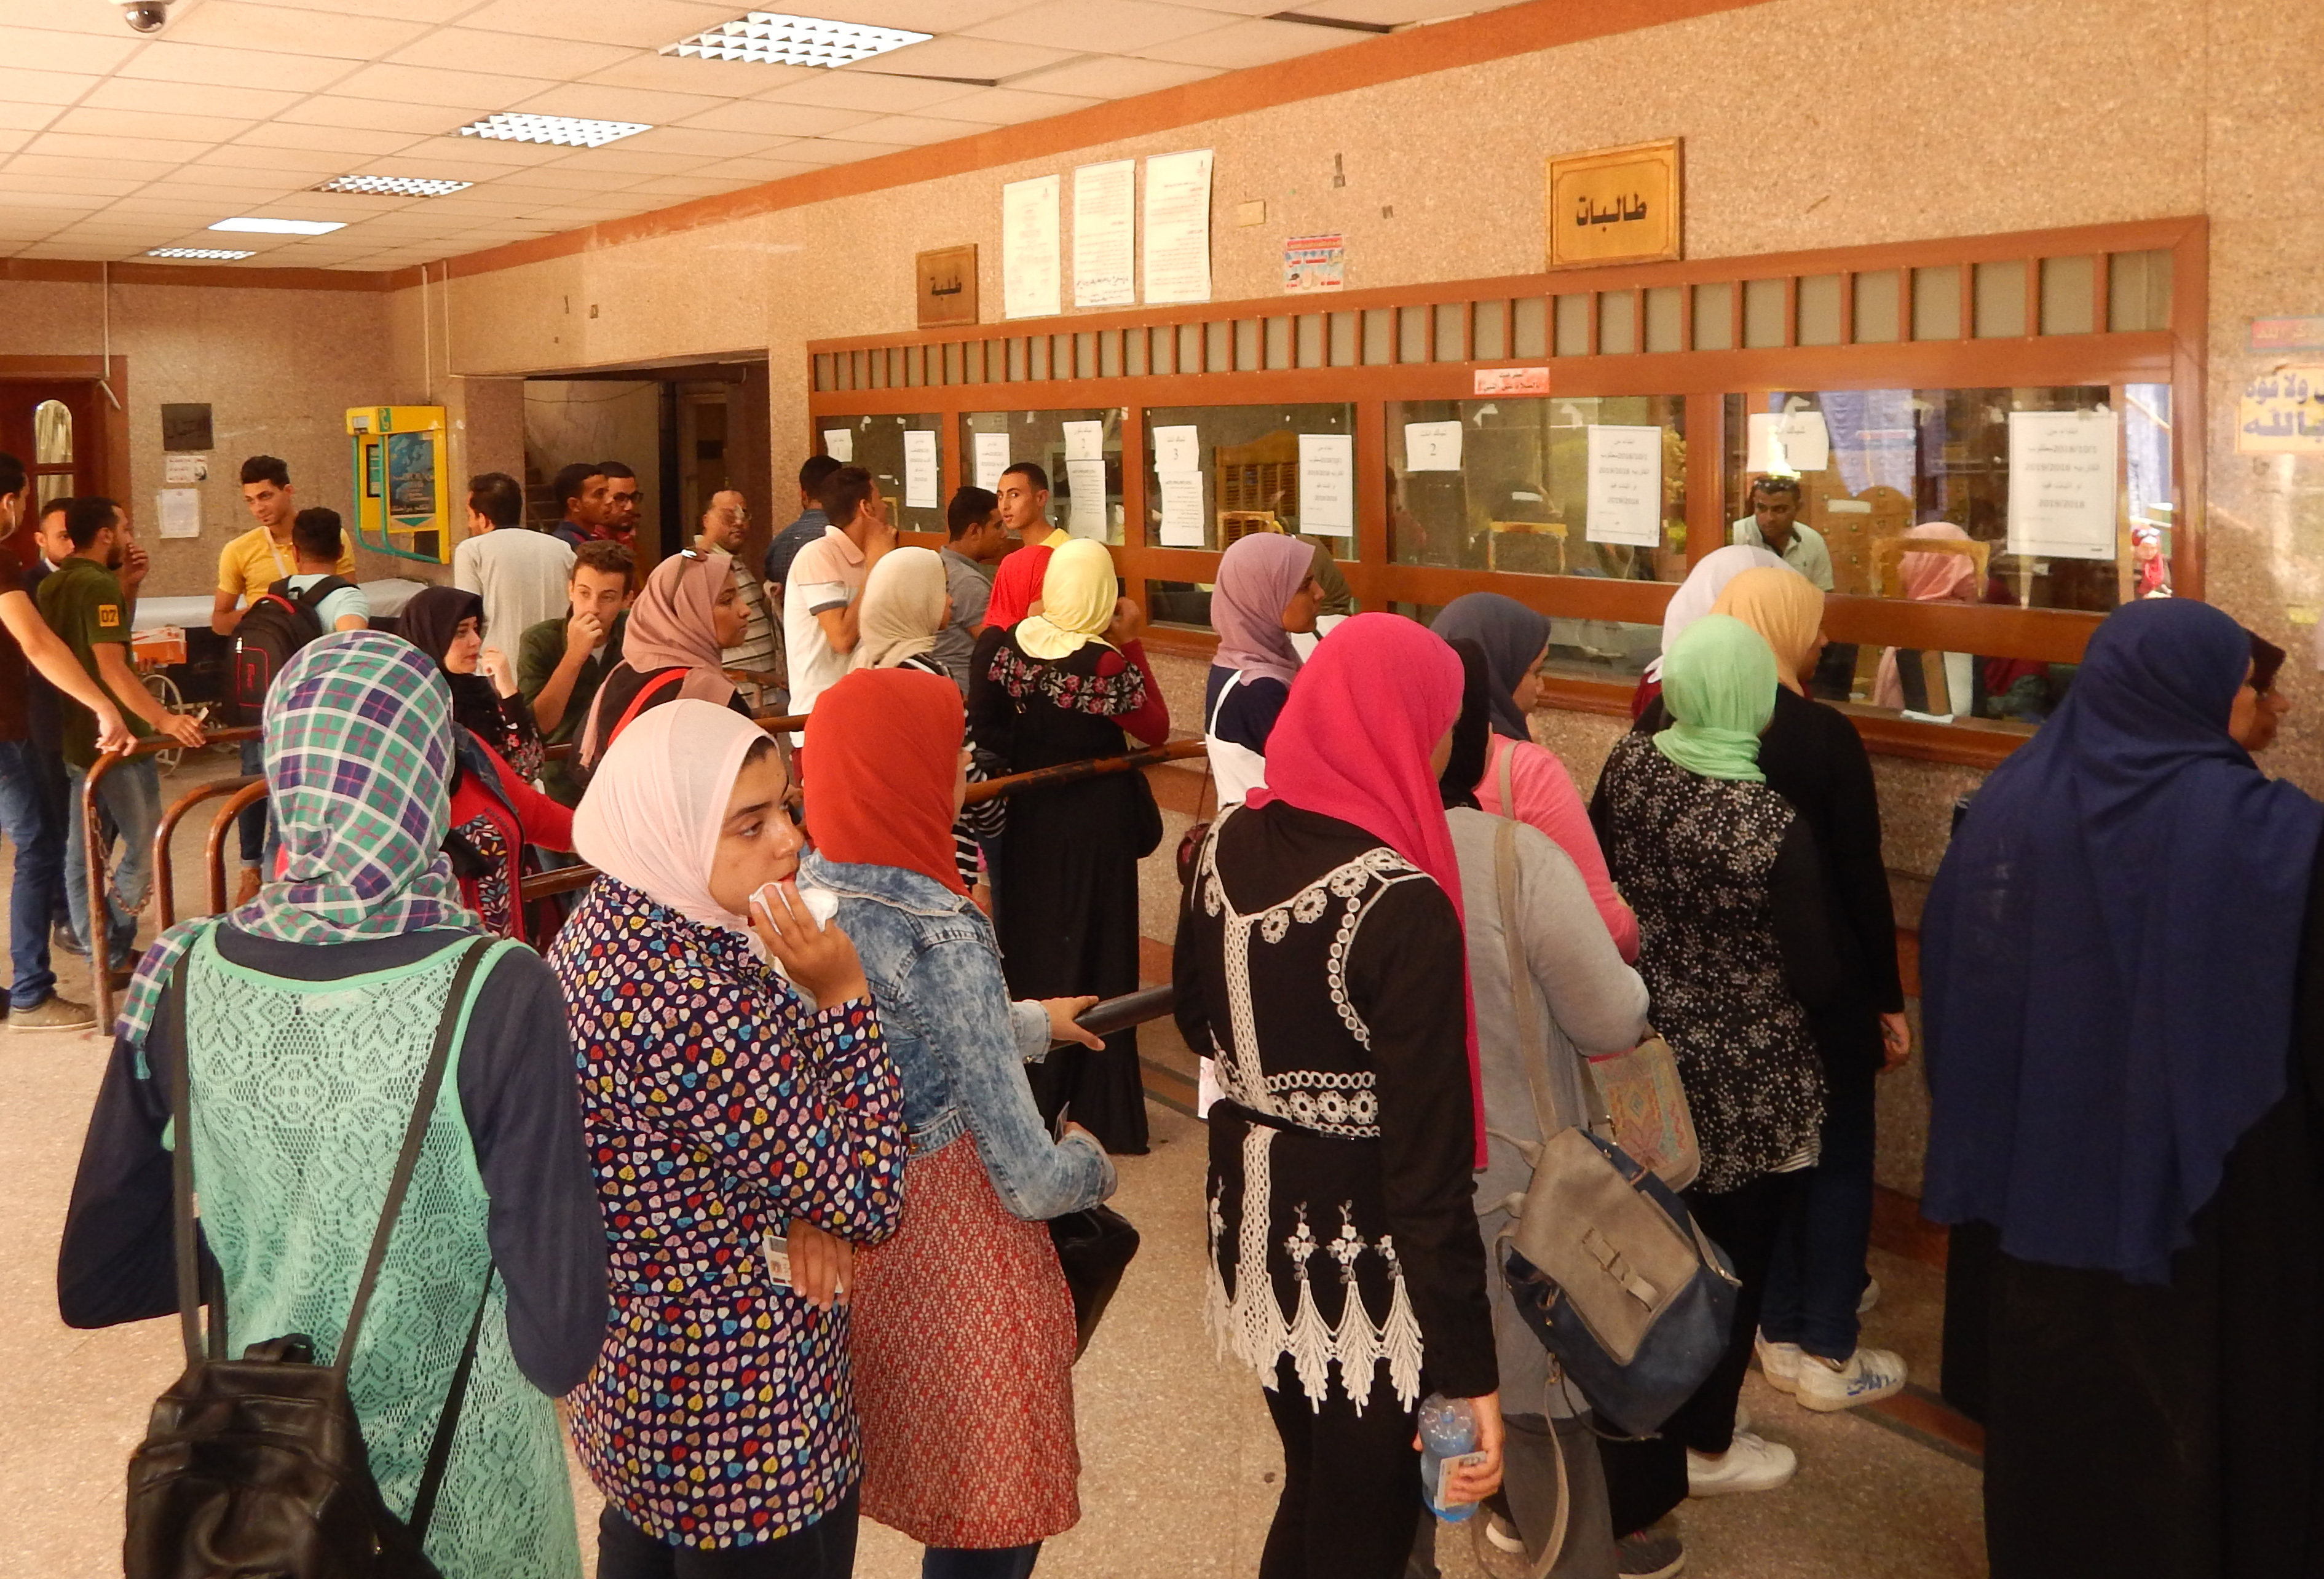 الكشف الطبى للطلبة والطالبات الجدد بكلية الزراعة جامعة القاهرة يوم الأربعاء 5/9/2018  بمستشفى الطلبة